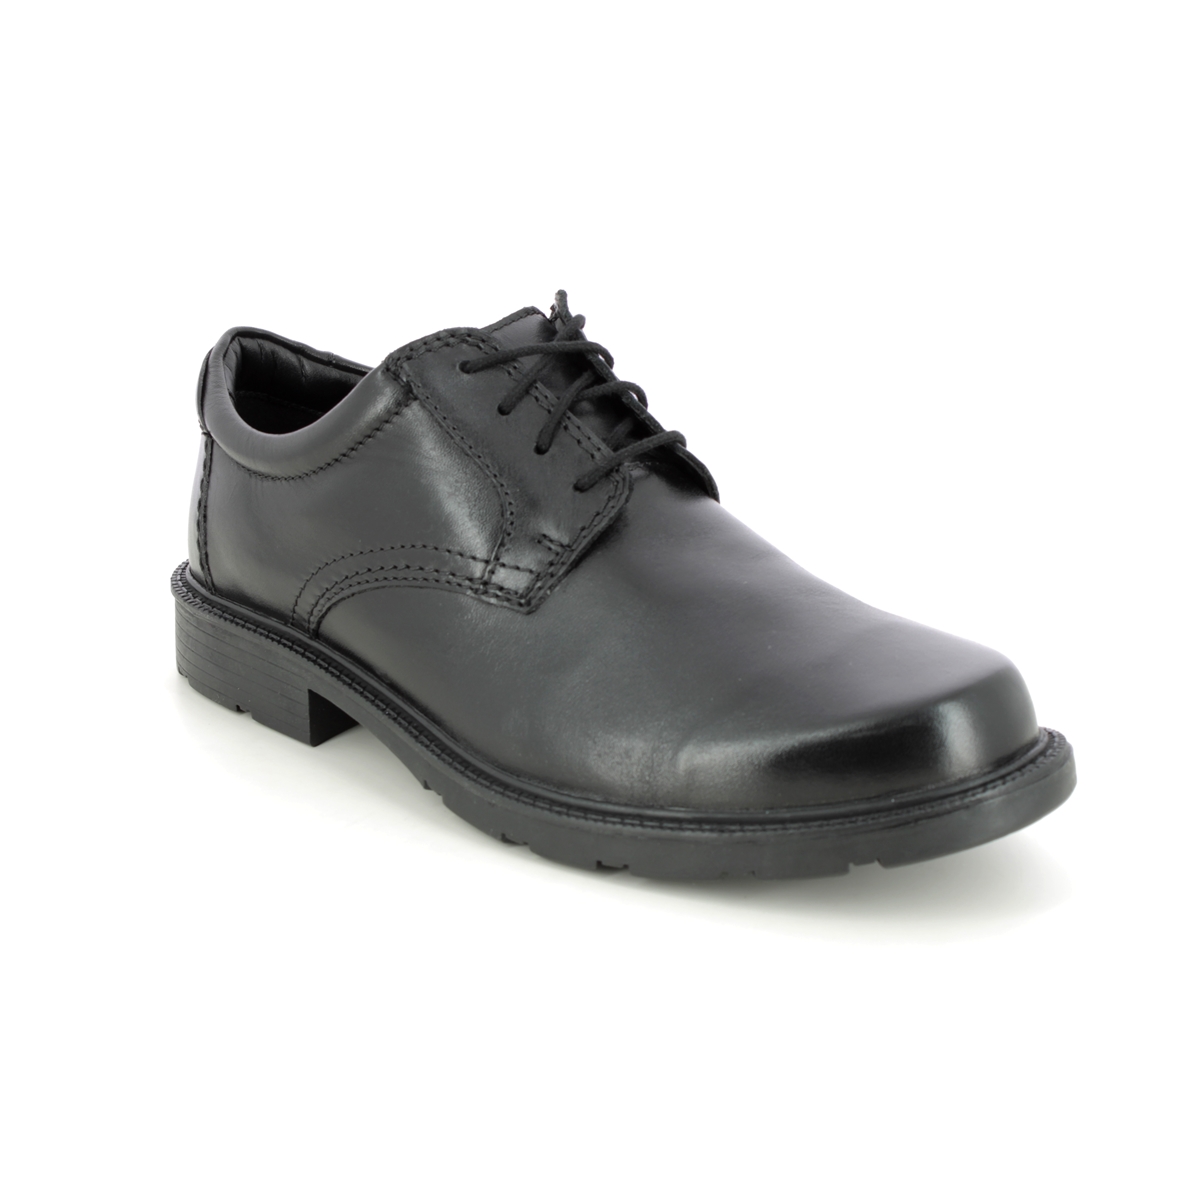 Clarks Men's Formal Boots | tca.dothome.co.kr